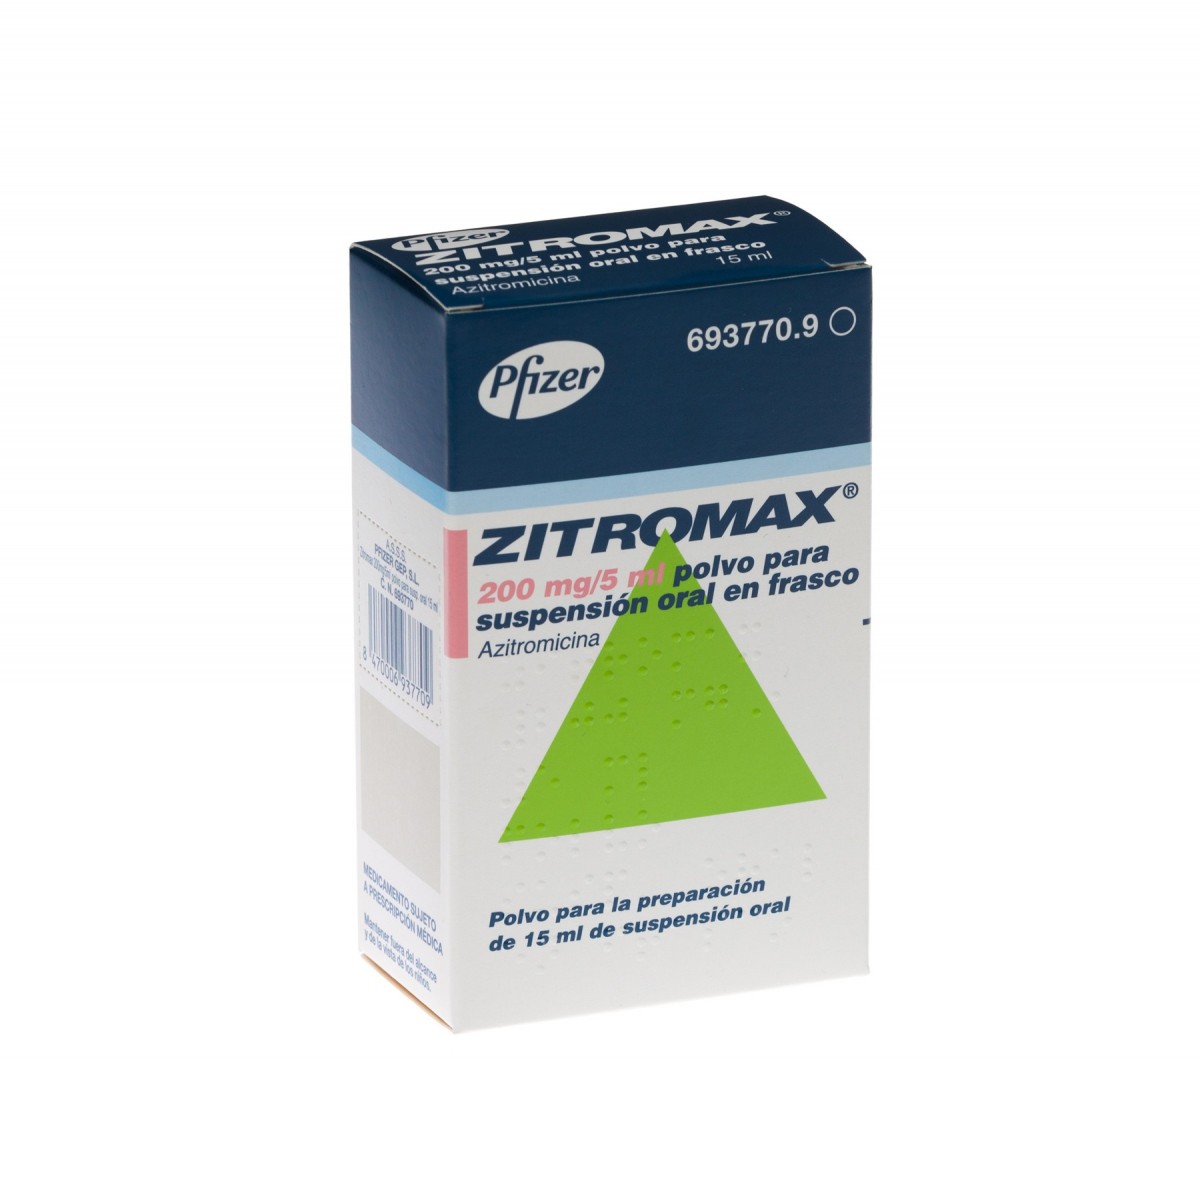 ZITROMAX 200 mg/5 ml POLVO PARA SUSPENSION ORAL EN FRASCO, 1 frasco de 30 ml fotografía del envase.